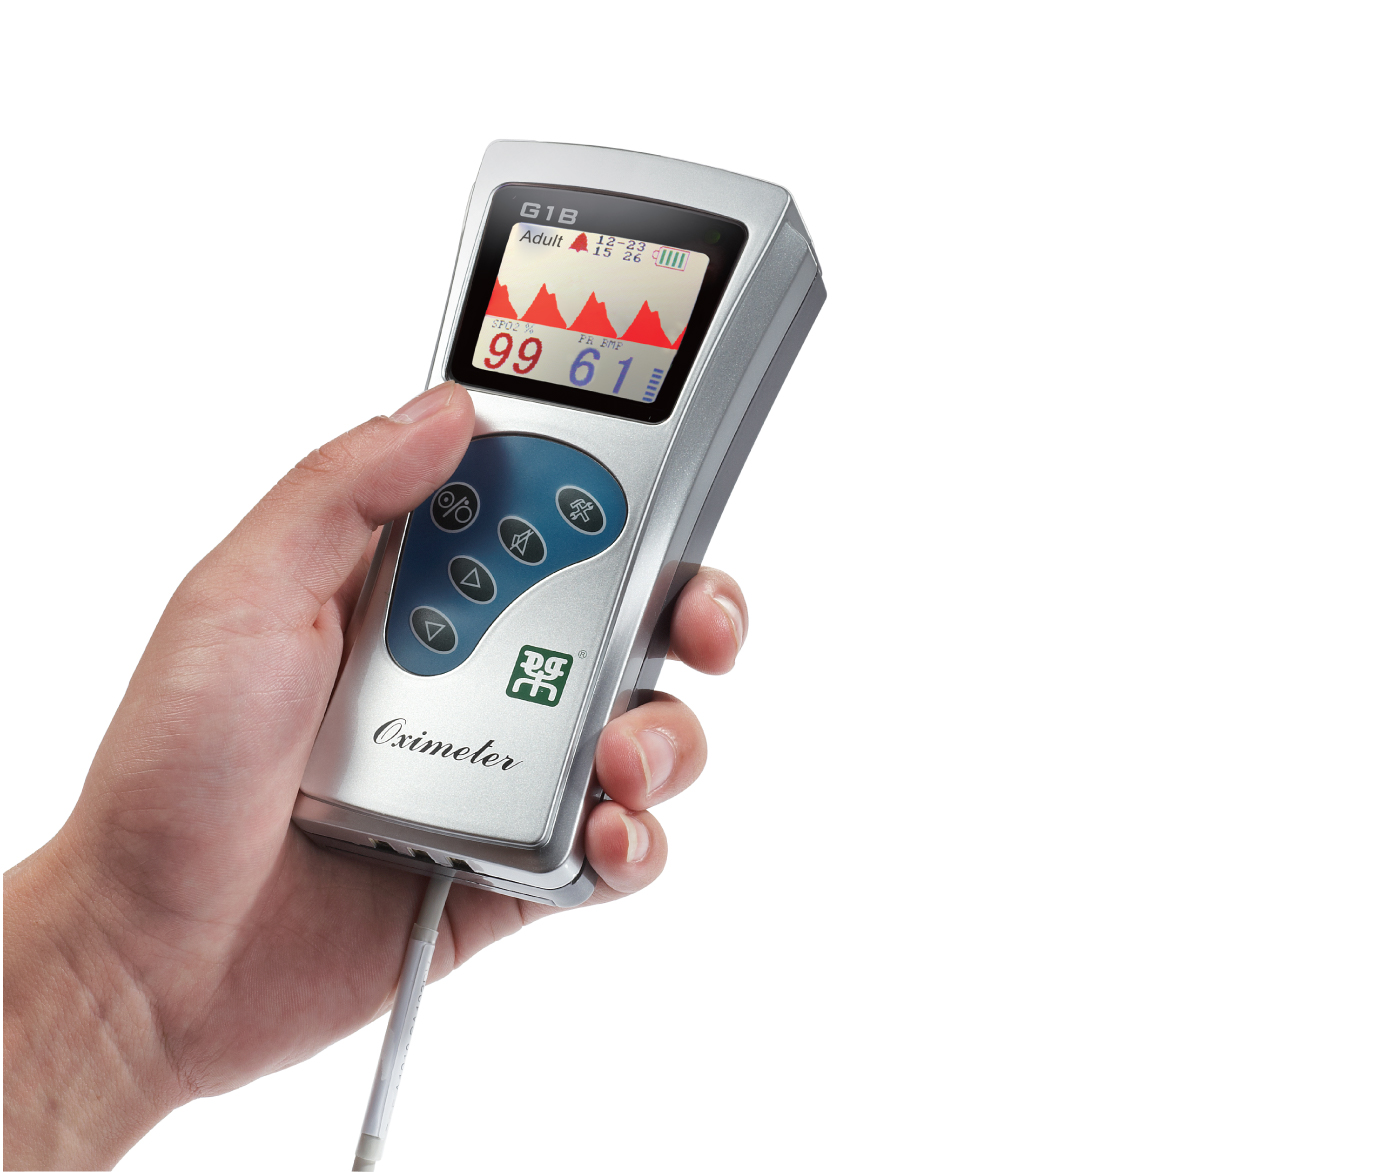 G1B pulse oximeter